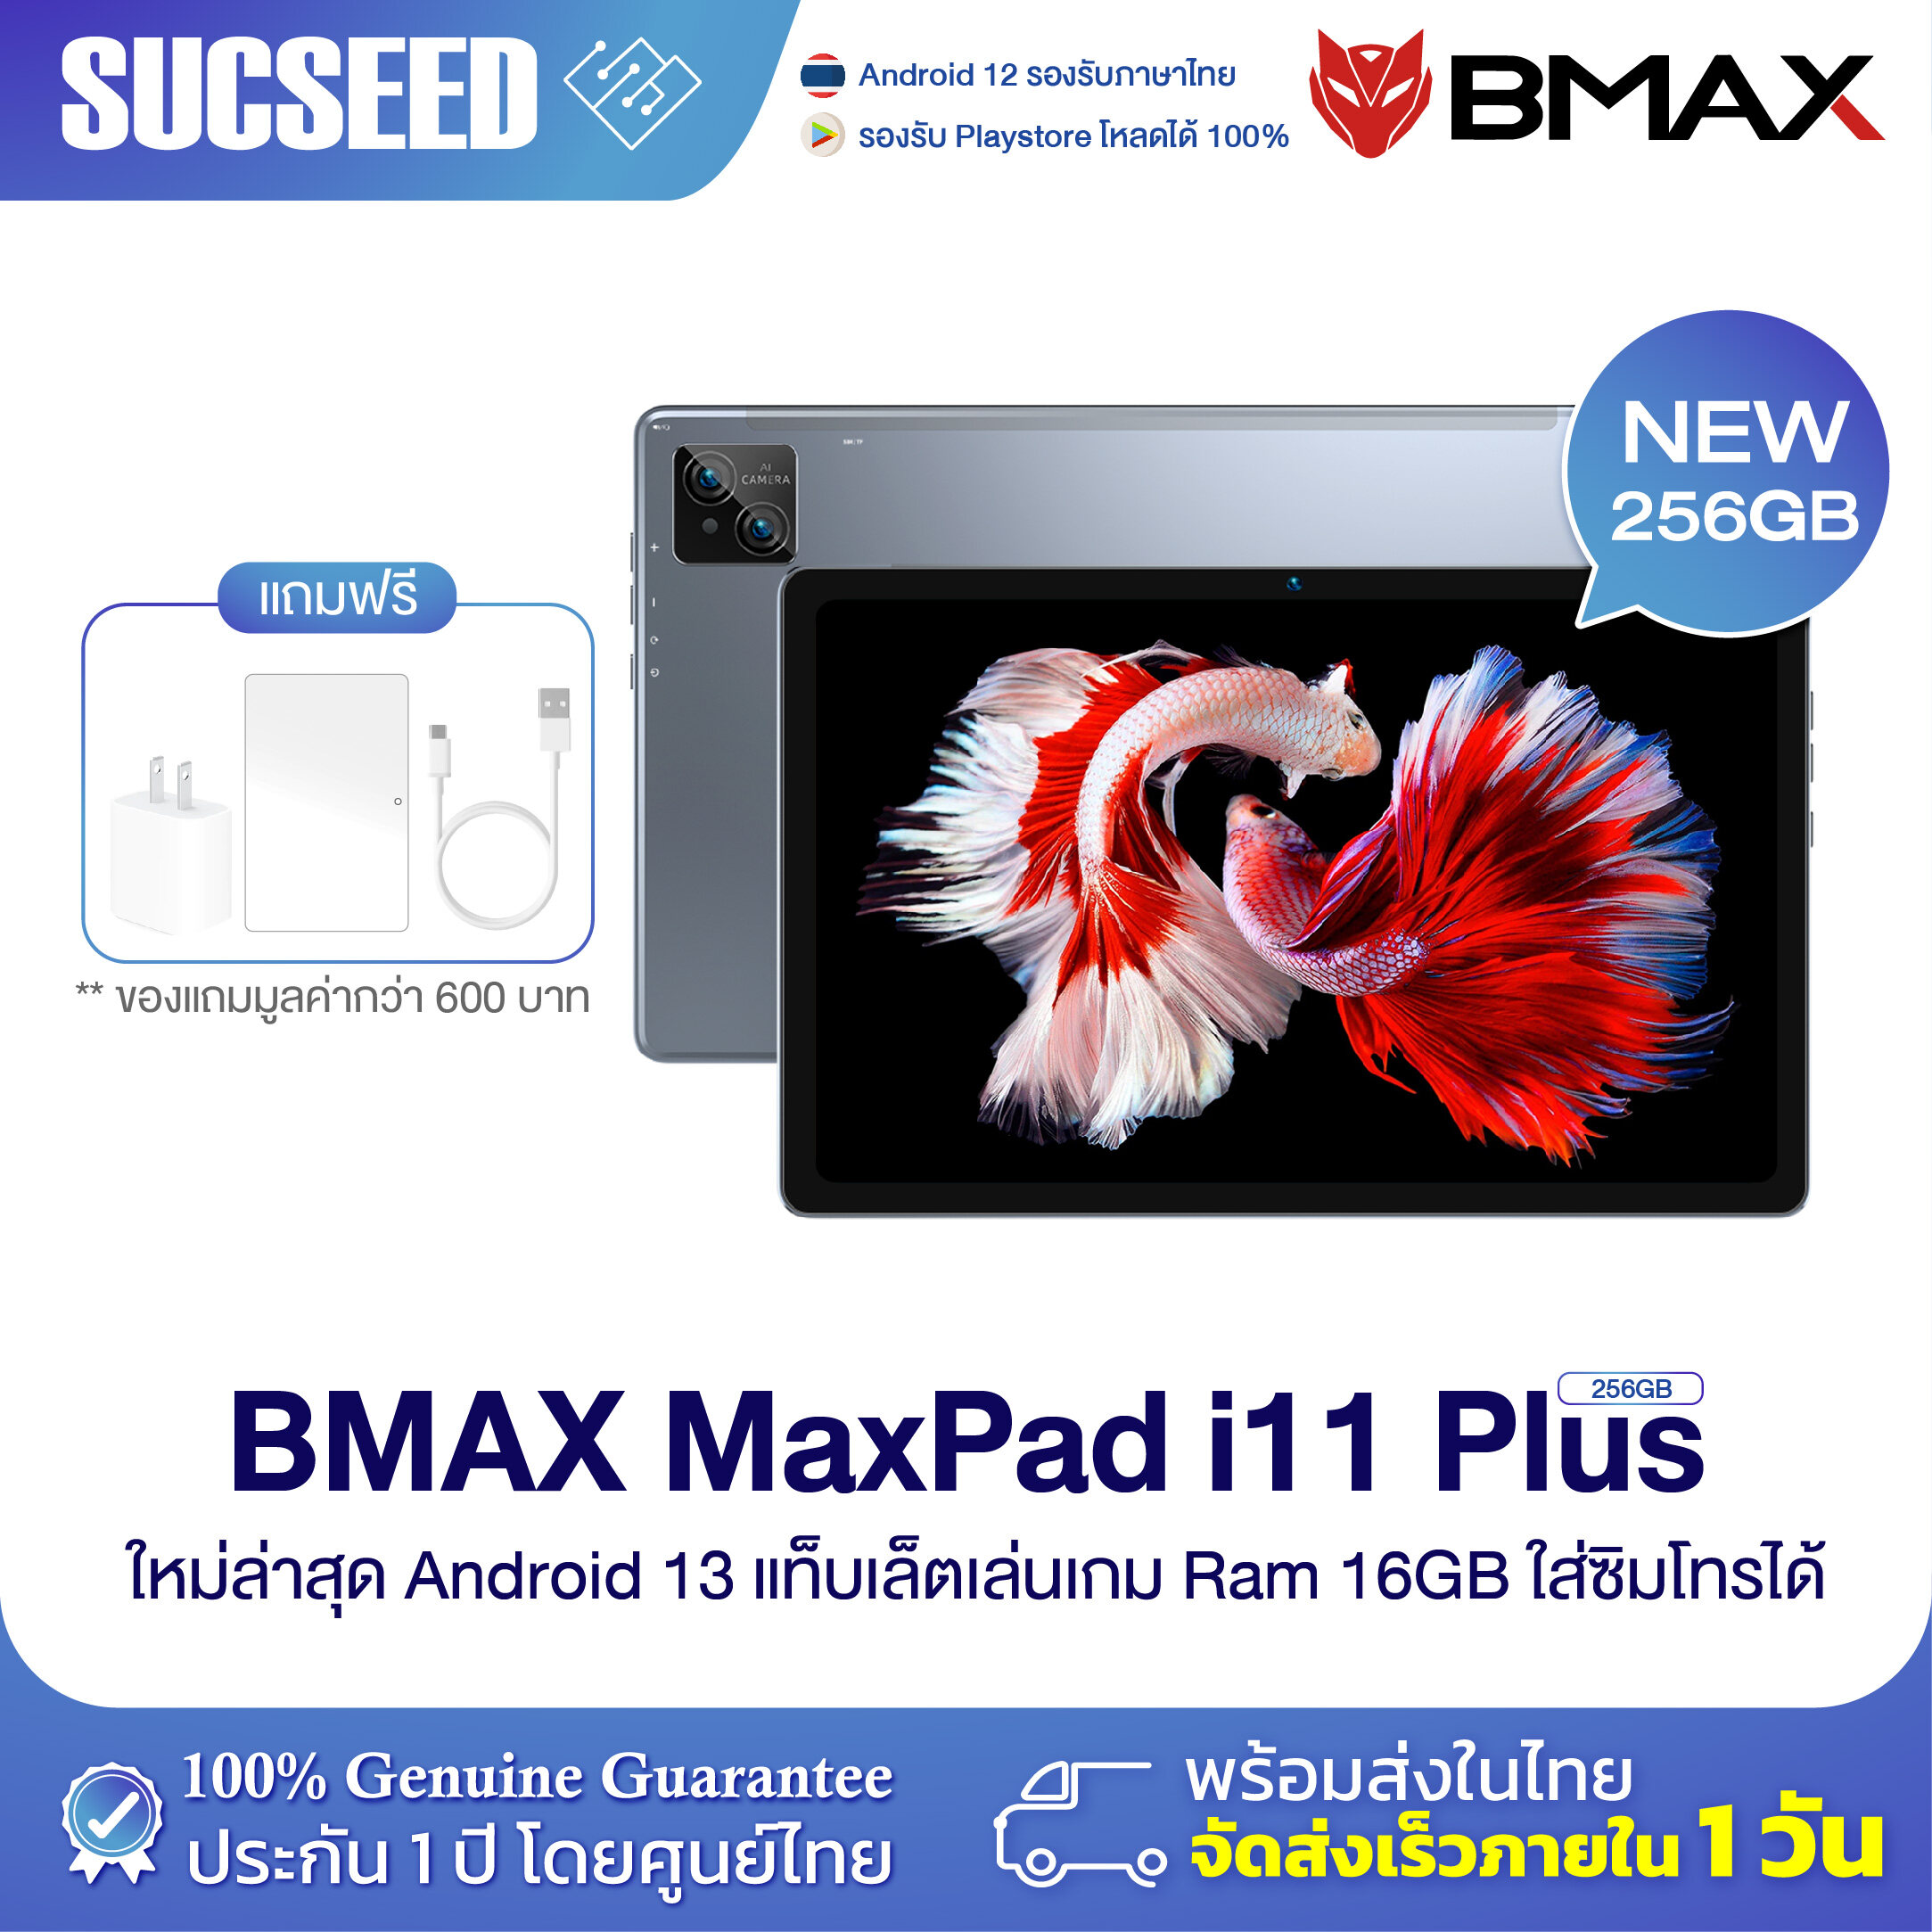 bmax-tablet